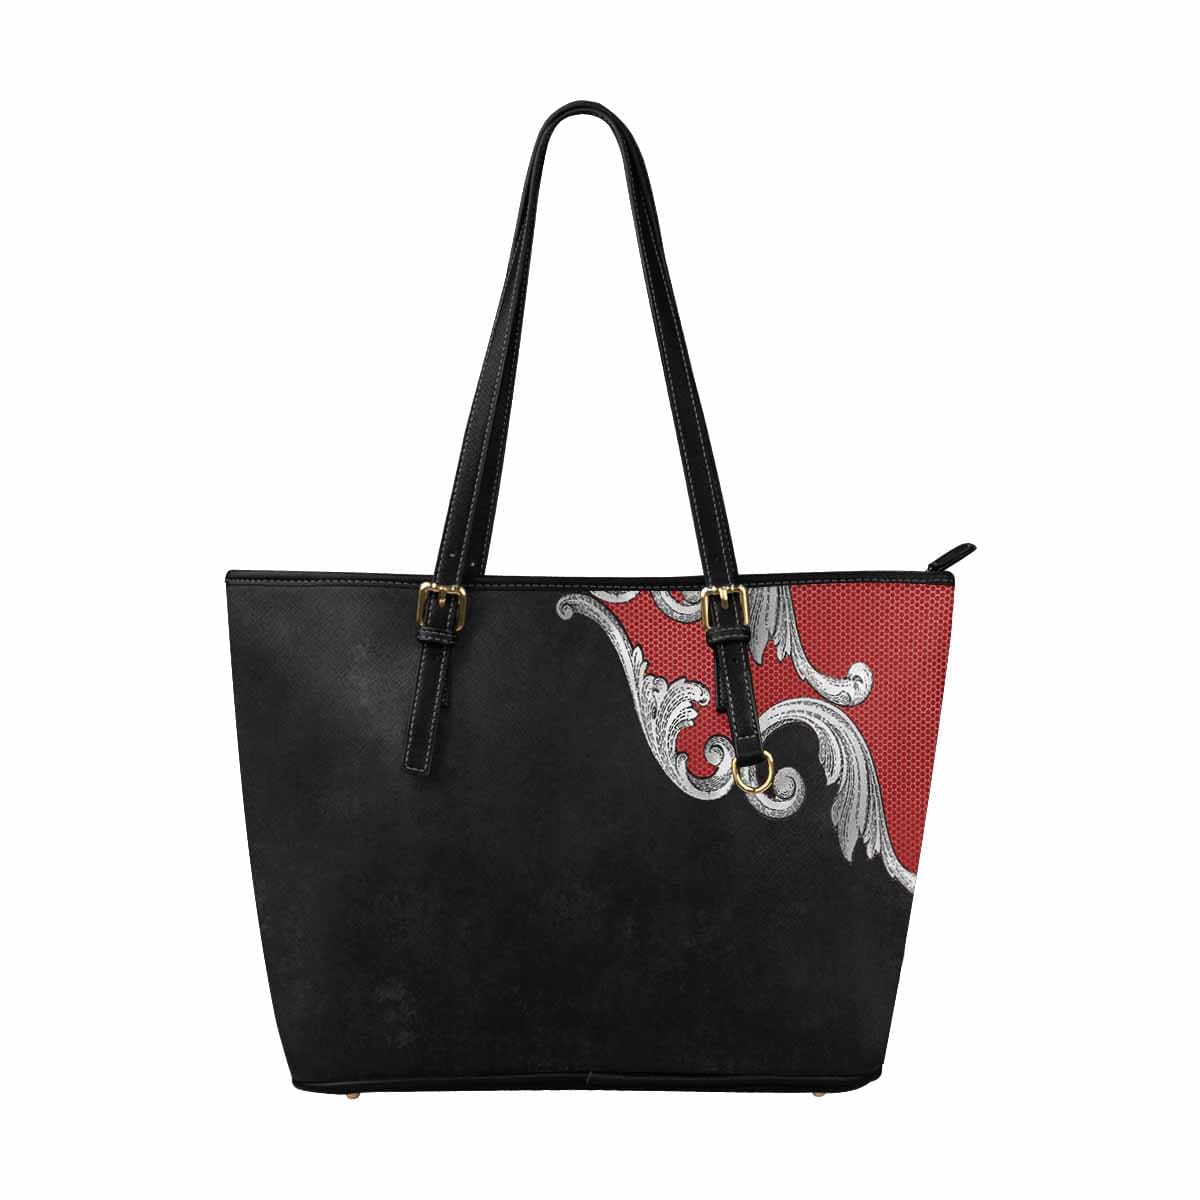 Large Leather Tote Shoulder Bag - Black Multicolor Handbag - Bags | Leather